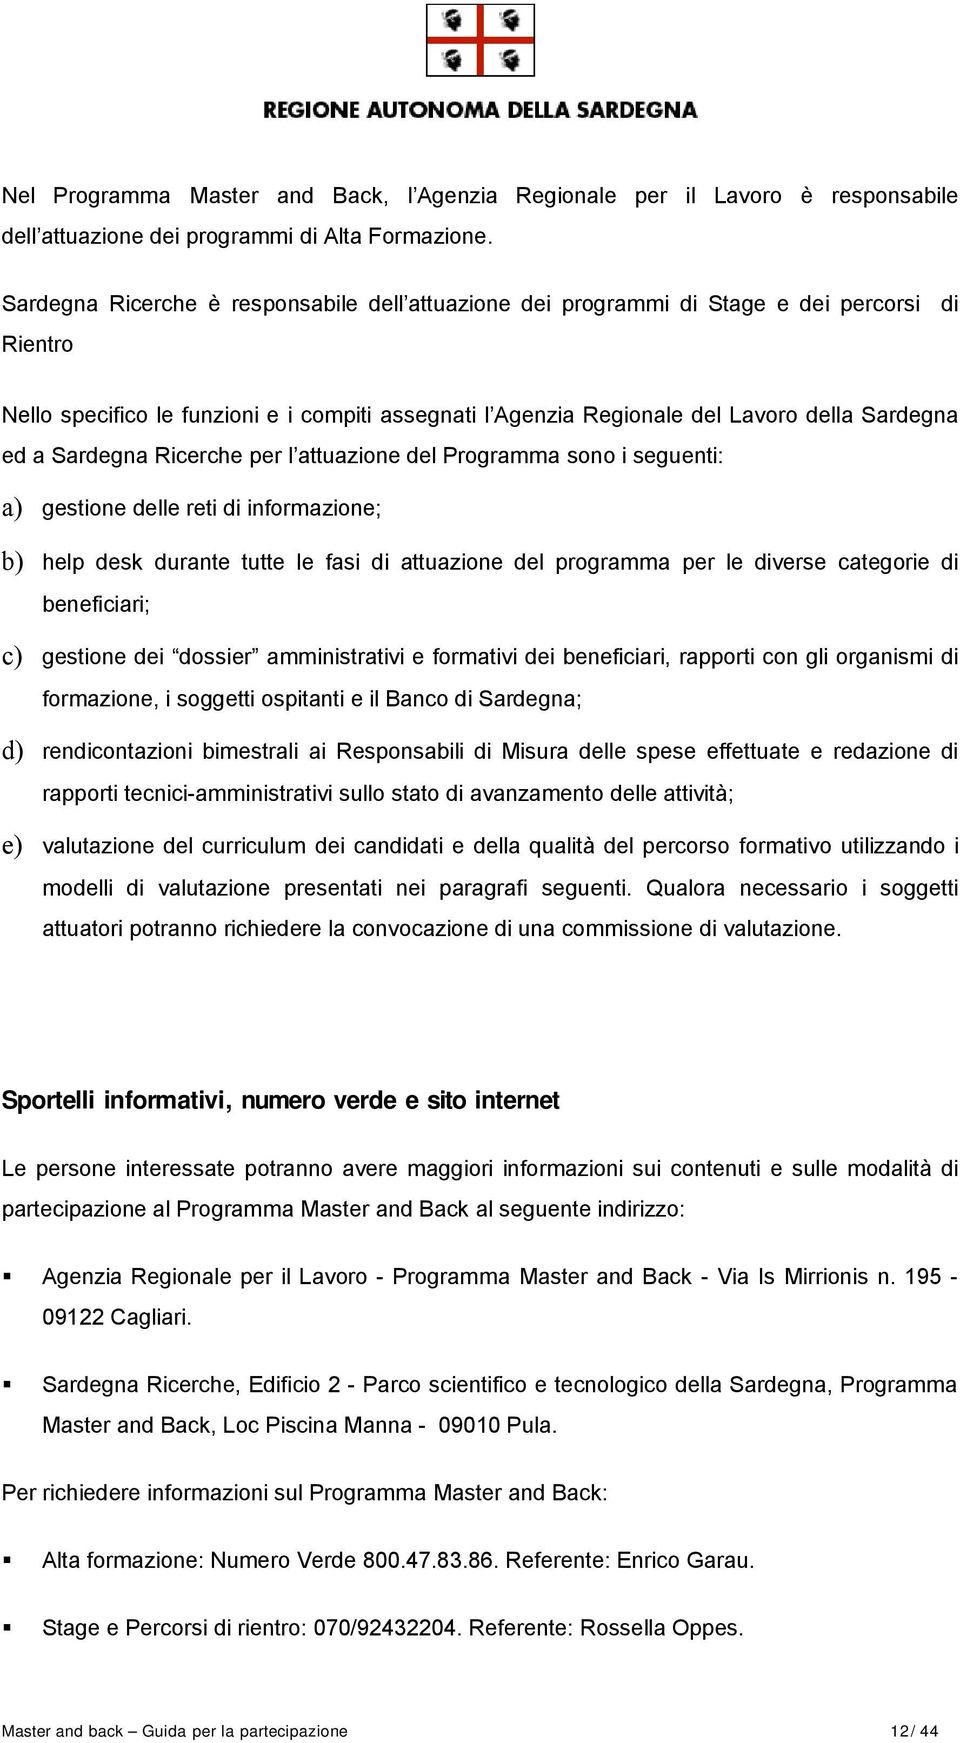 Sardegna Ricerche per l attuazione del Programma sono i seguenti: a) gestione delle reti di informazione; b) help desk durante tutte le fasi di attuazione del programma per le diverse categorie di